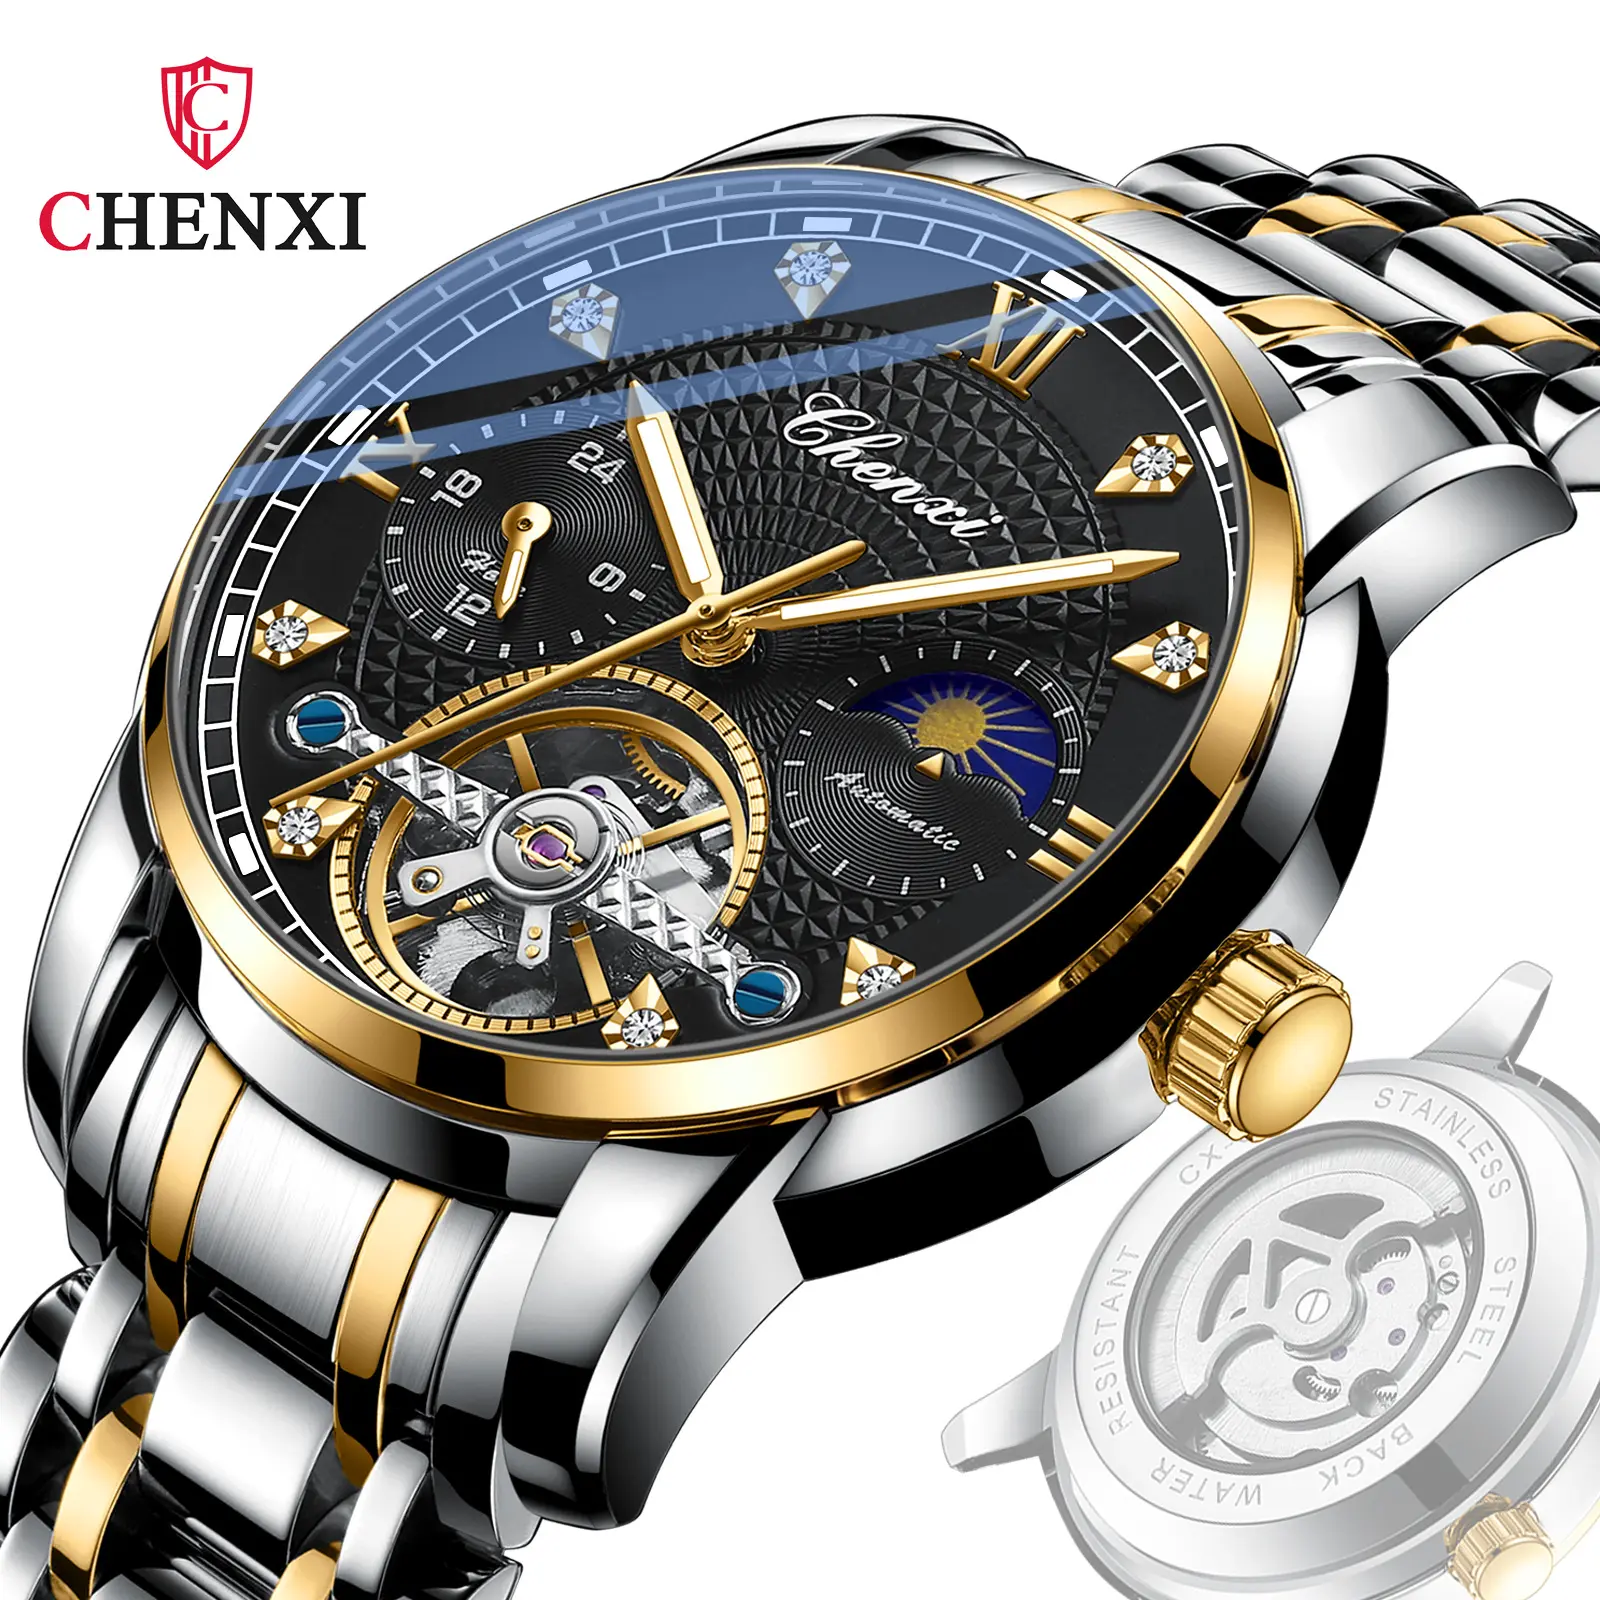 Chenxi 8870 jam tangan pria murah stainless steel self-winding tourbillon waterproof mens wrist watch